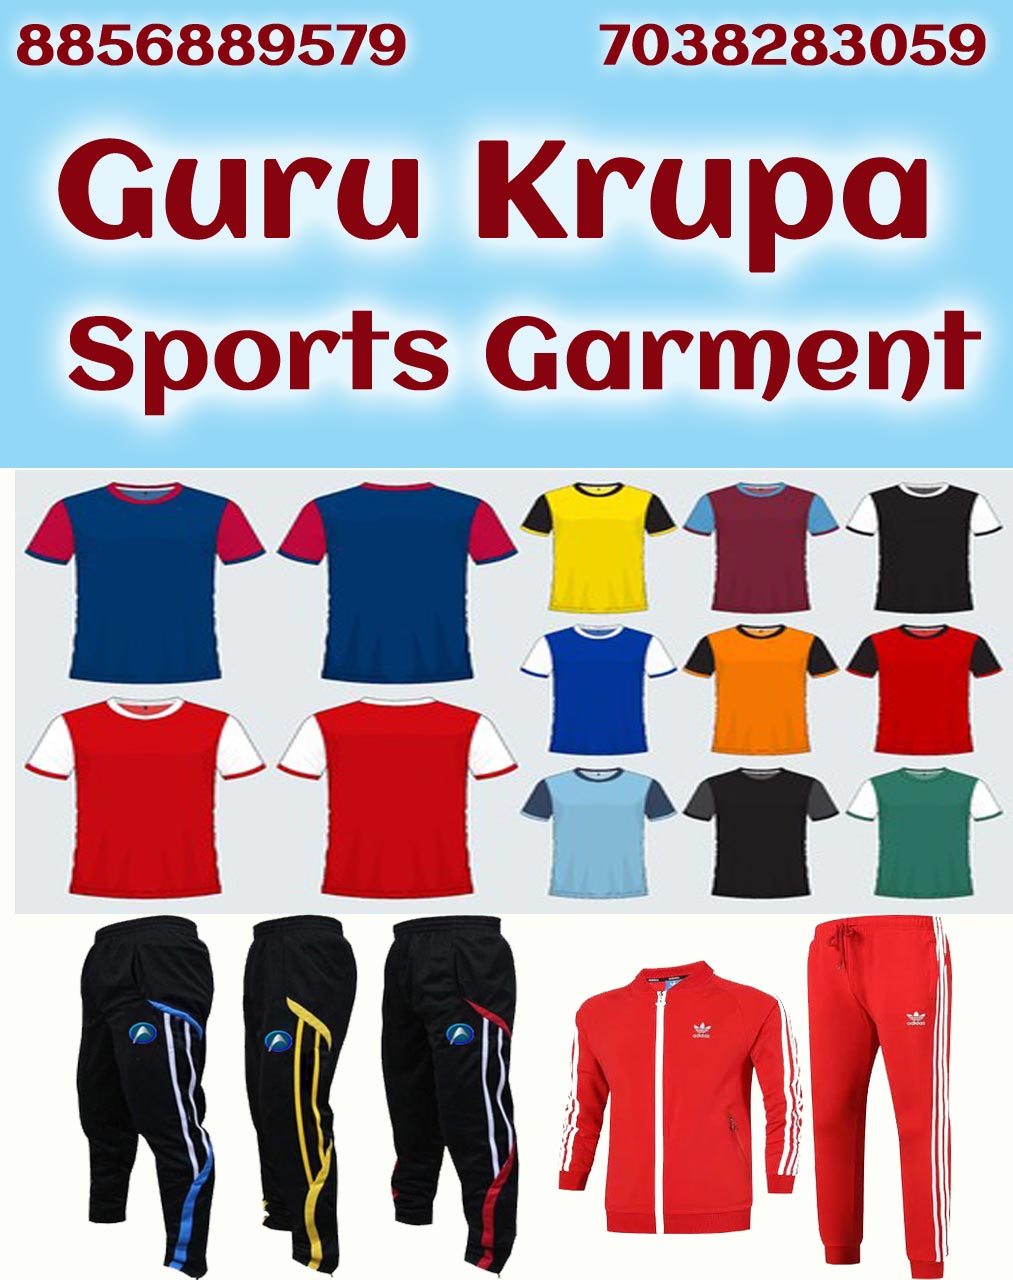 Guru Krupa Sports Garment| SolapurMall.com